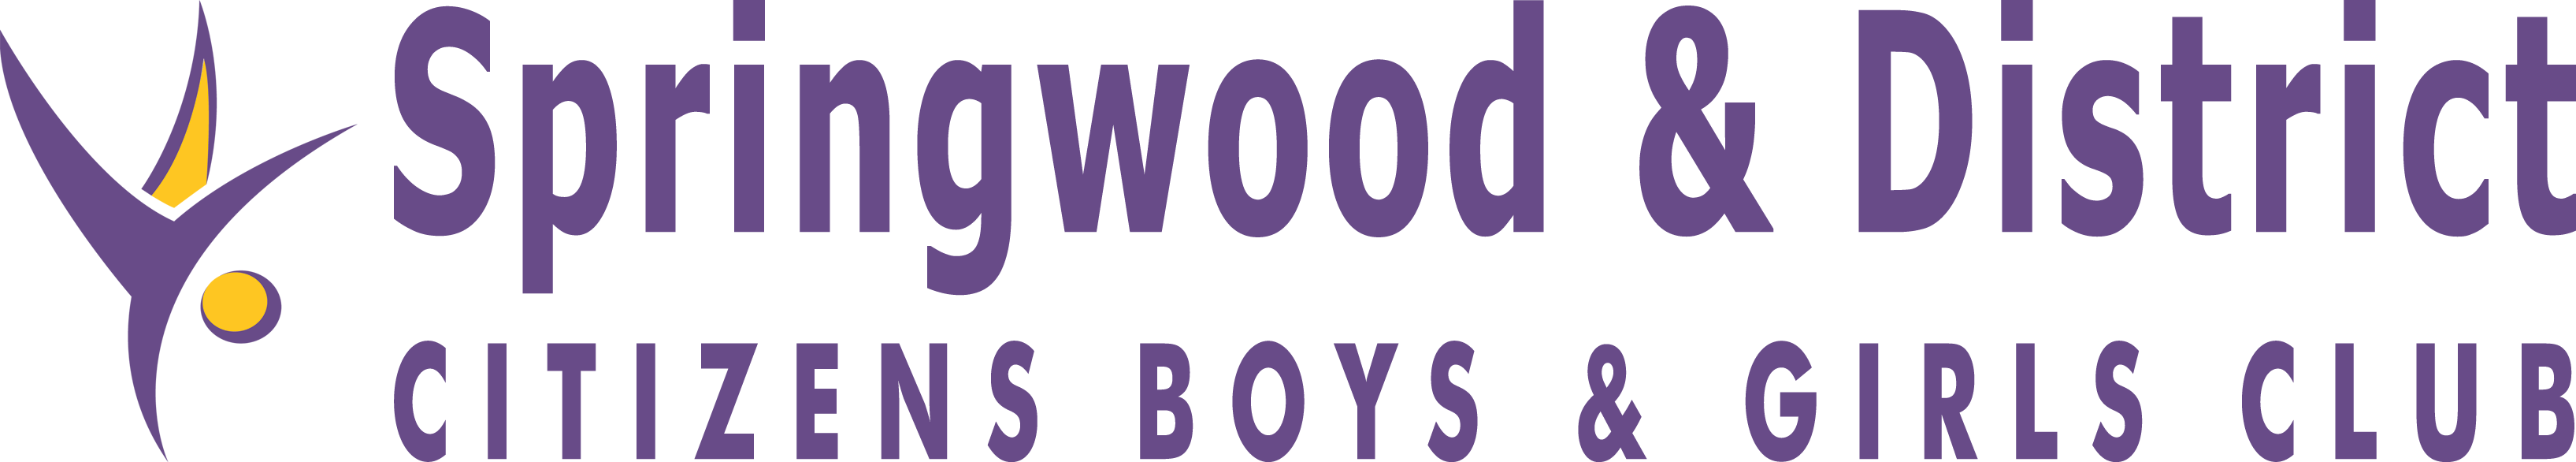 Springwood Boys and Girls Club